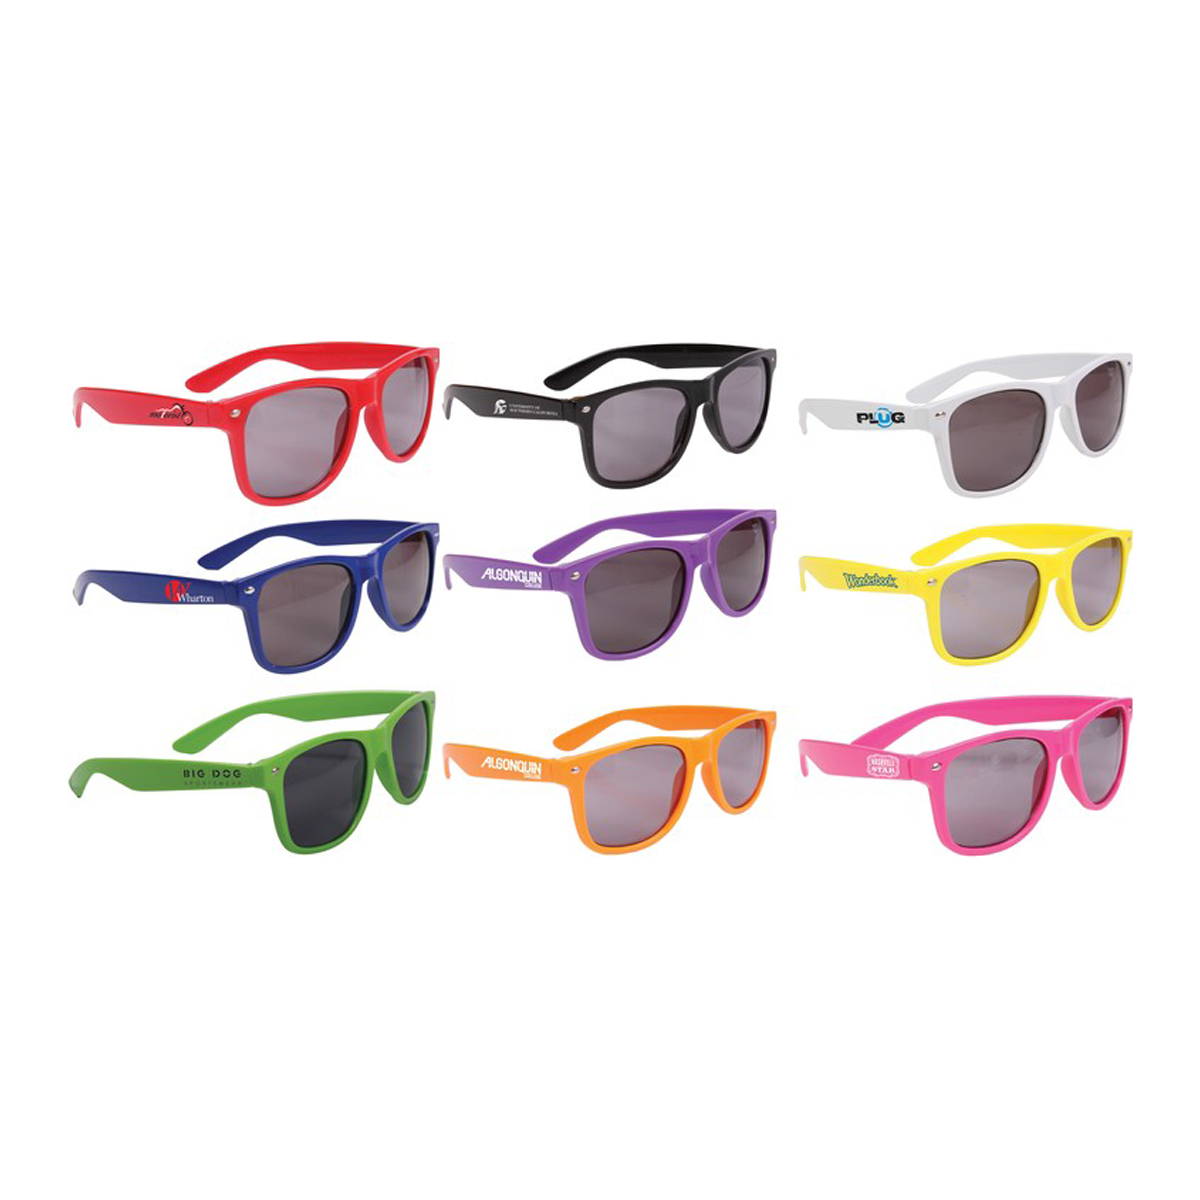 ColorFrame Sunglasses